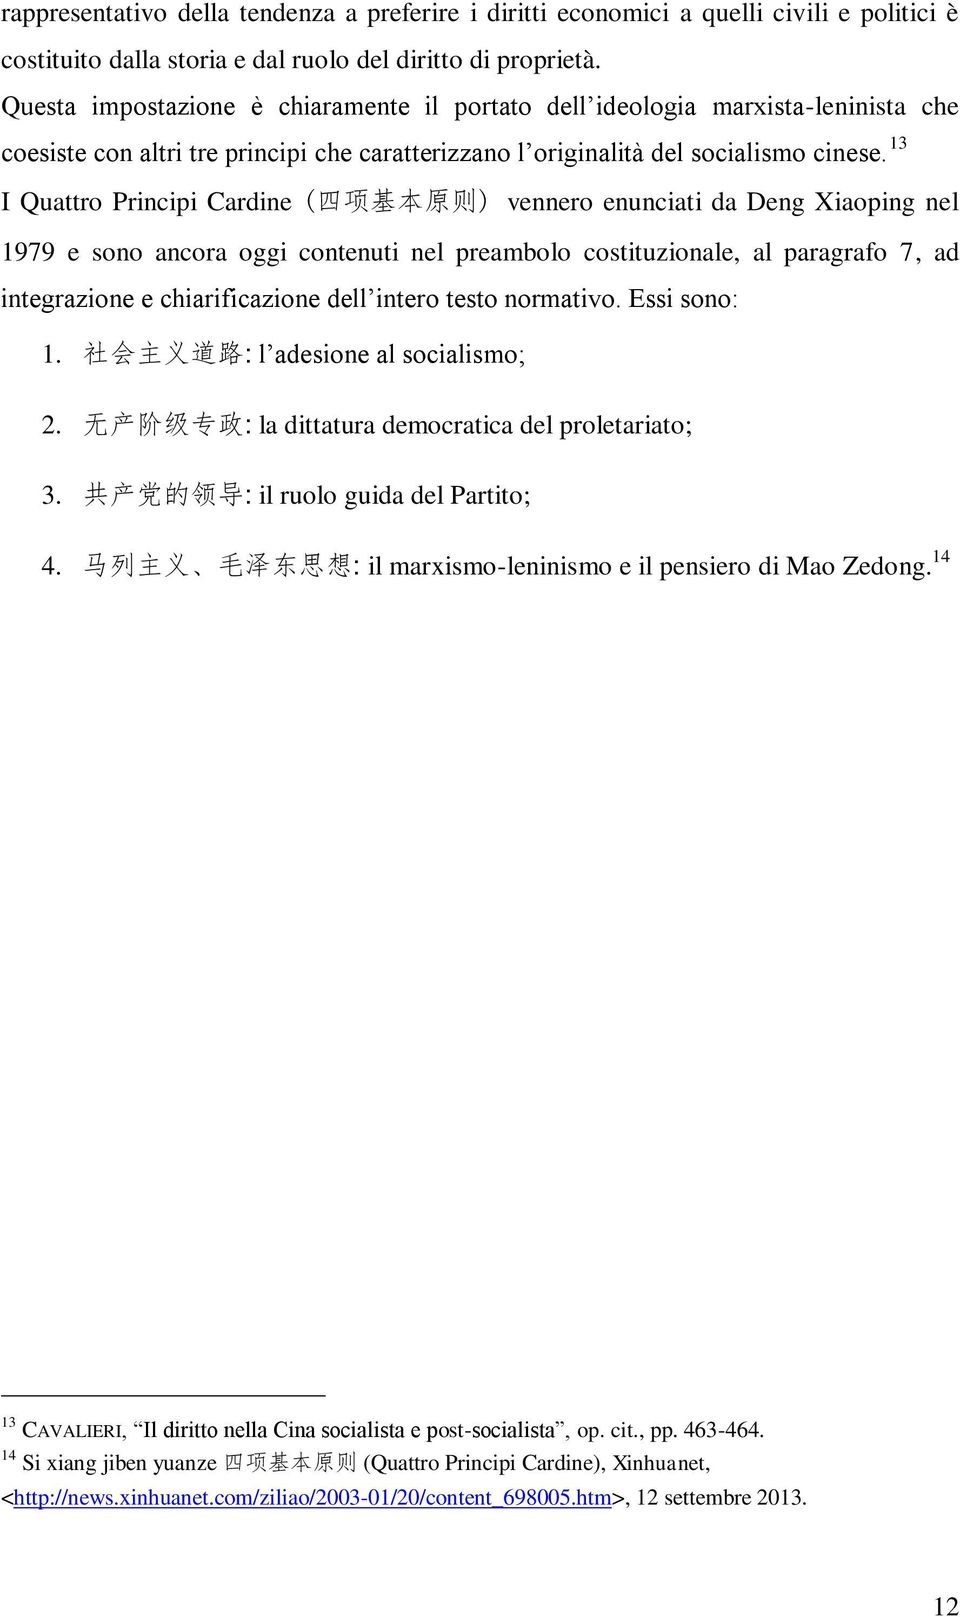 13 I Quattro Principi Cardine ( 四 项 基 本 原 则 ) vennero enunciati da Deng Xiaoping nel 1979 e sono ancora oggi contenuti nel preambolo costituzionale, al paragrafo 7, ad integrazione e chiarificazione